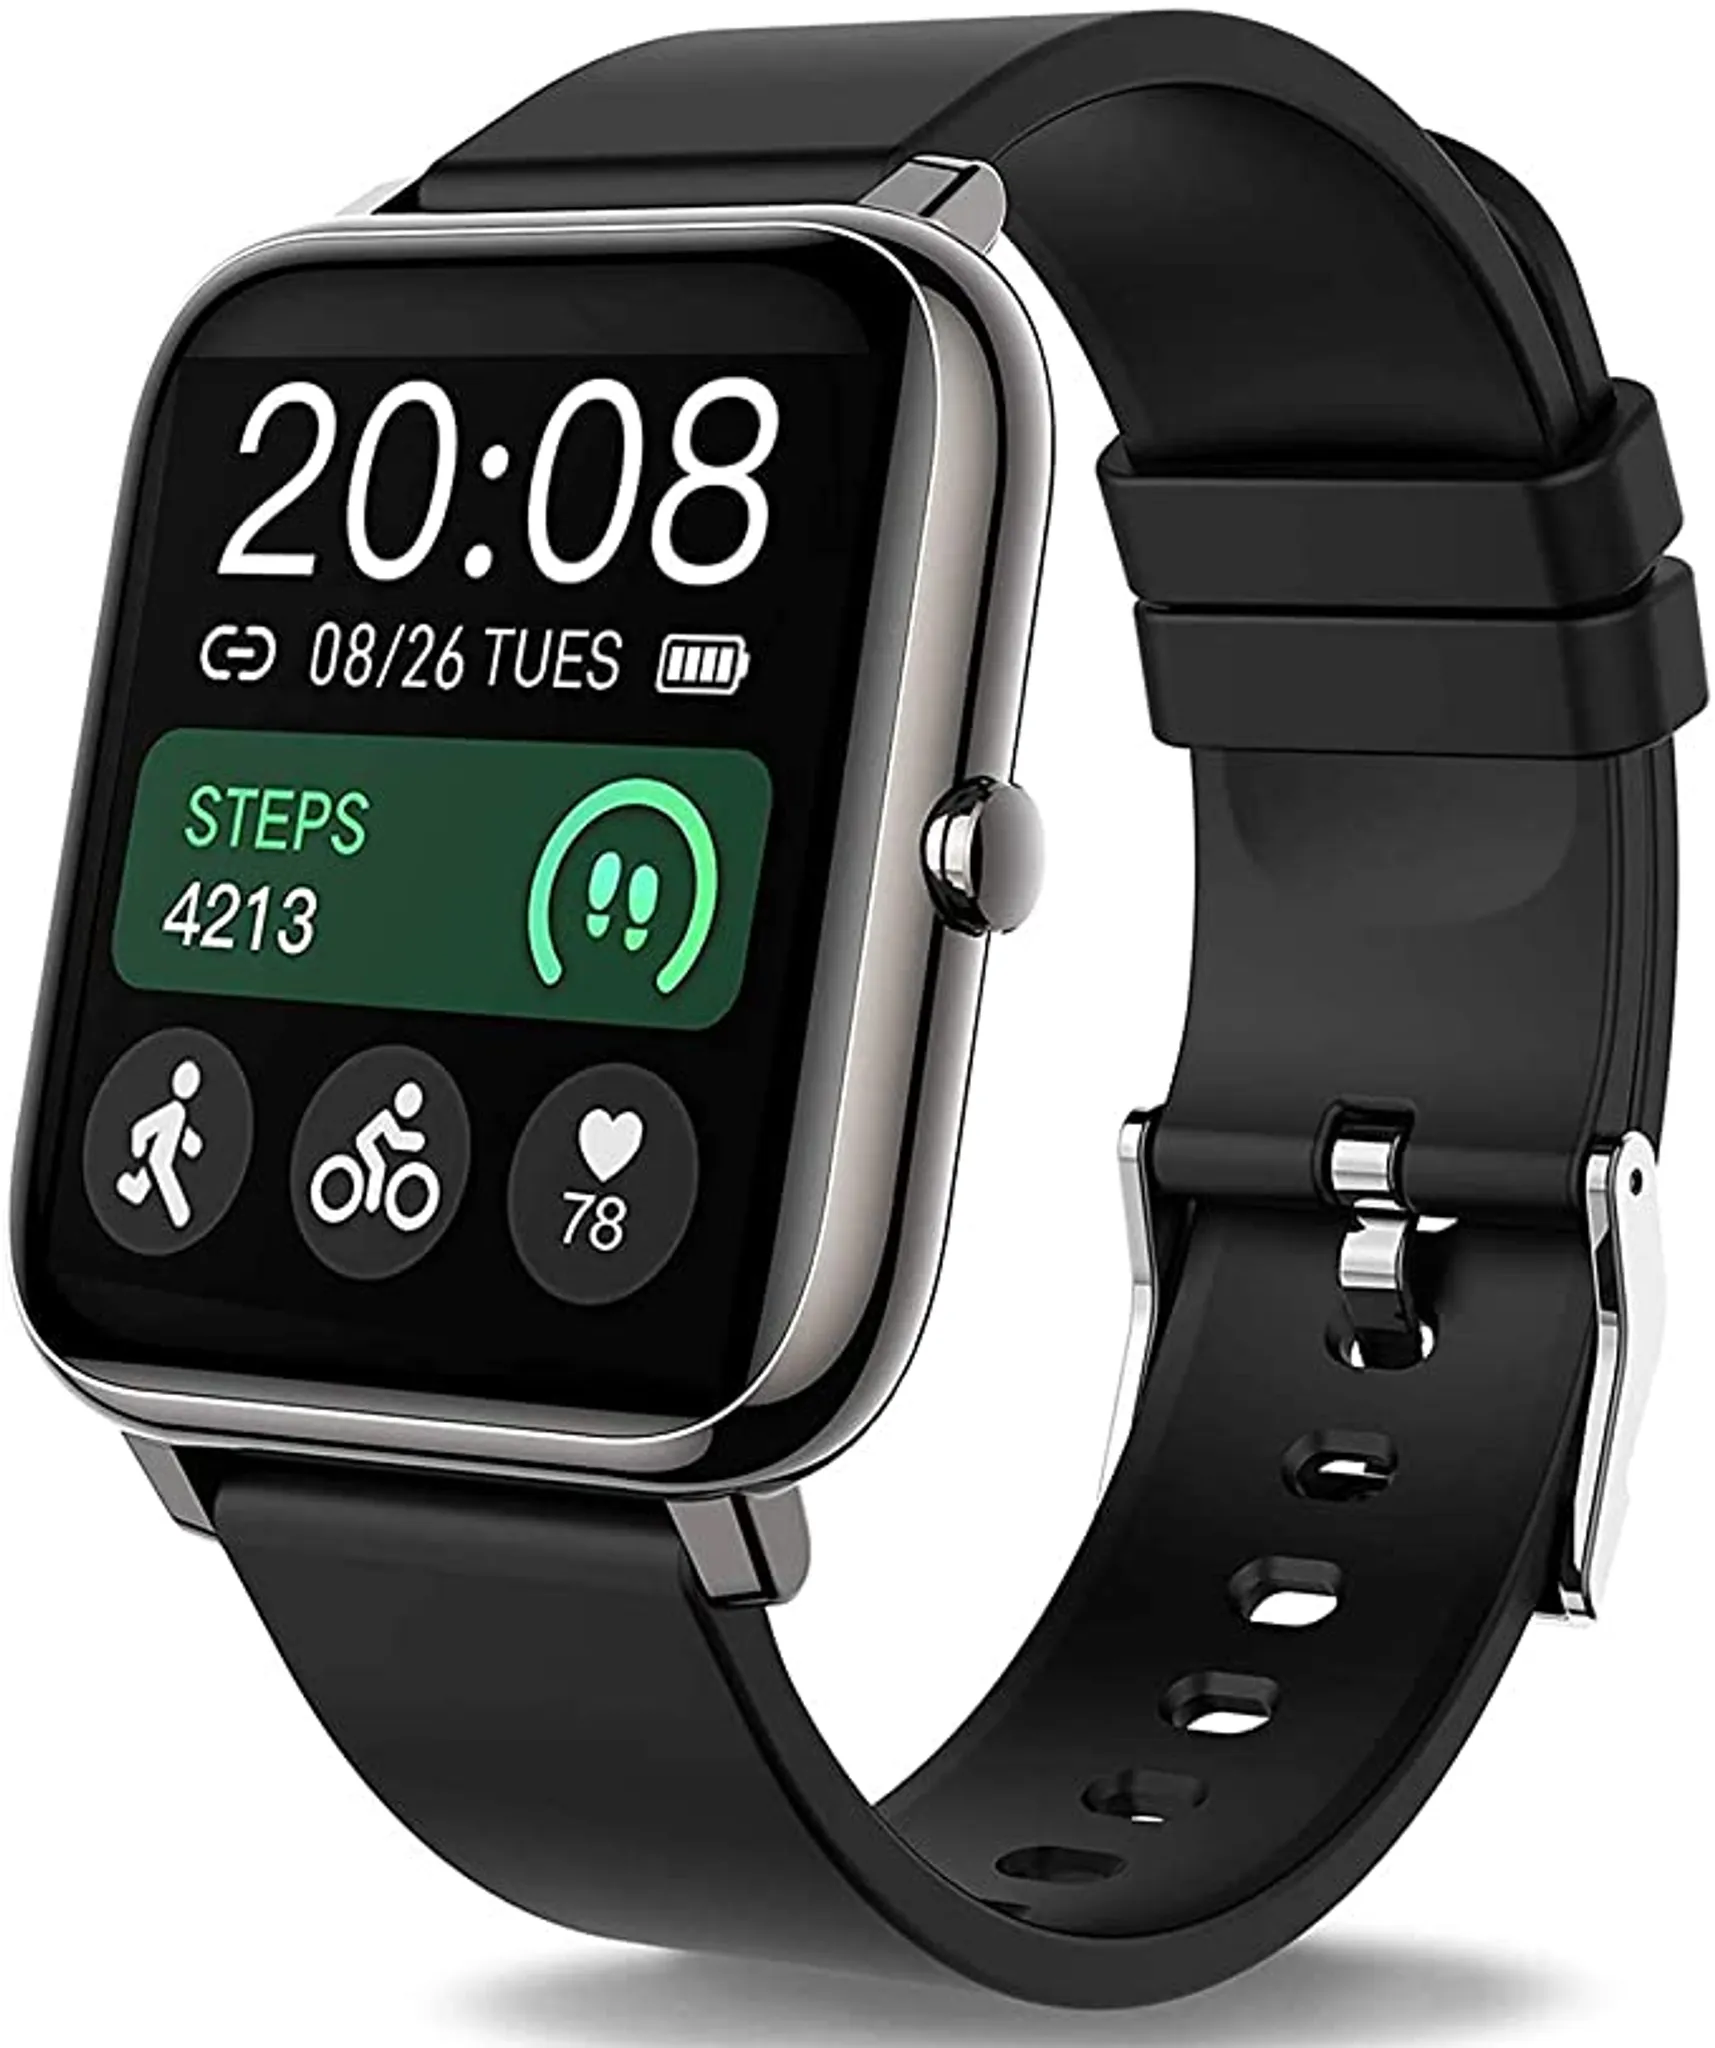 ITALNIC Uhr Fitness Fitness Tracker Smartwatch Bluetooth Männer Frauen Pulsoximeter Herzfrequenzmesser Handgelenk SmartBand Sport Schrittzähler Kalorien GPS EKG Wecker Wasserdicht IP68 Android iOS 